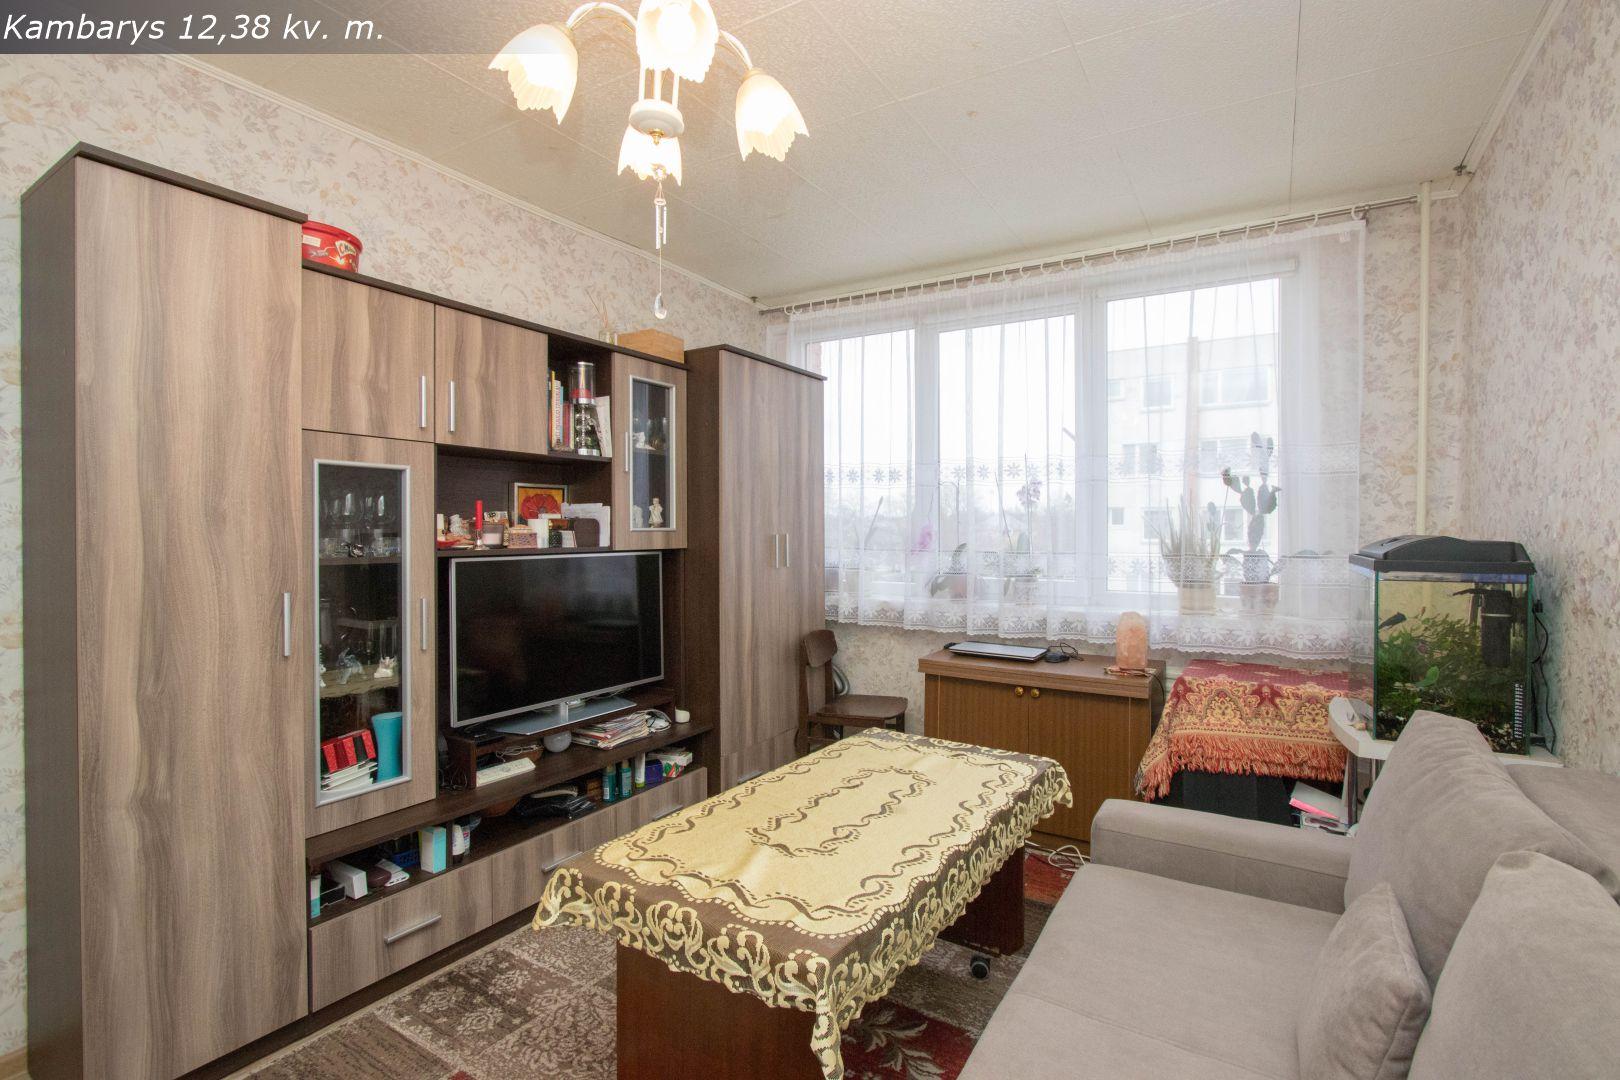 Parduodamas tvarkingas, jaukus 2 kambarių butas bendrabutinio tipo name Vytauto g. 265, Šiauliuose